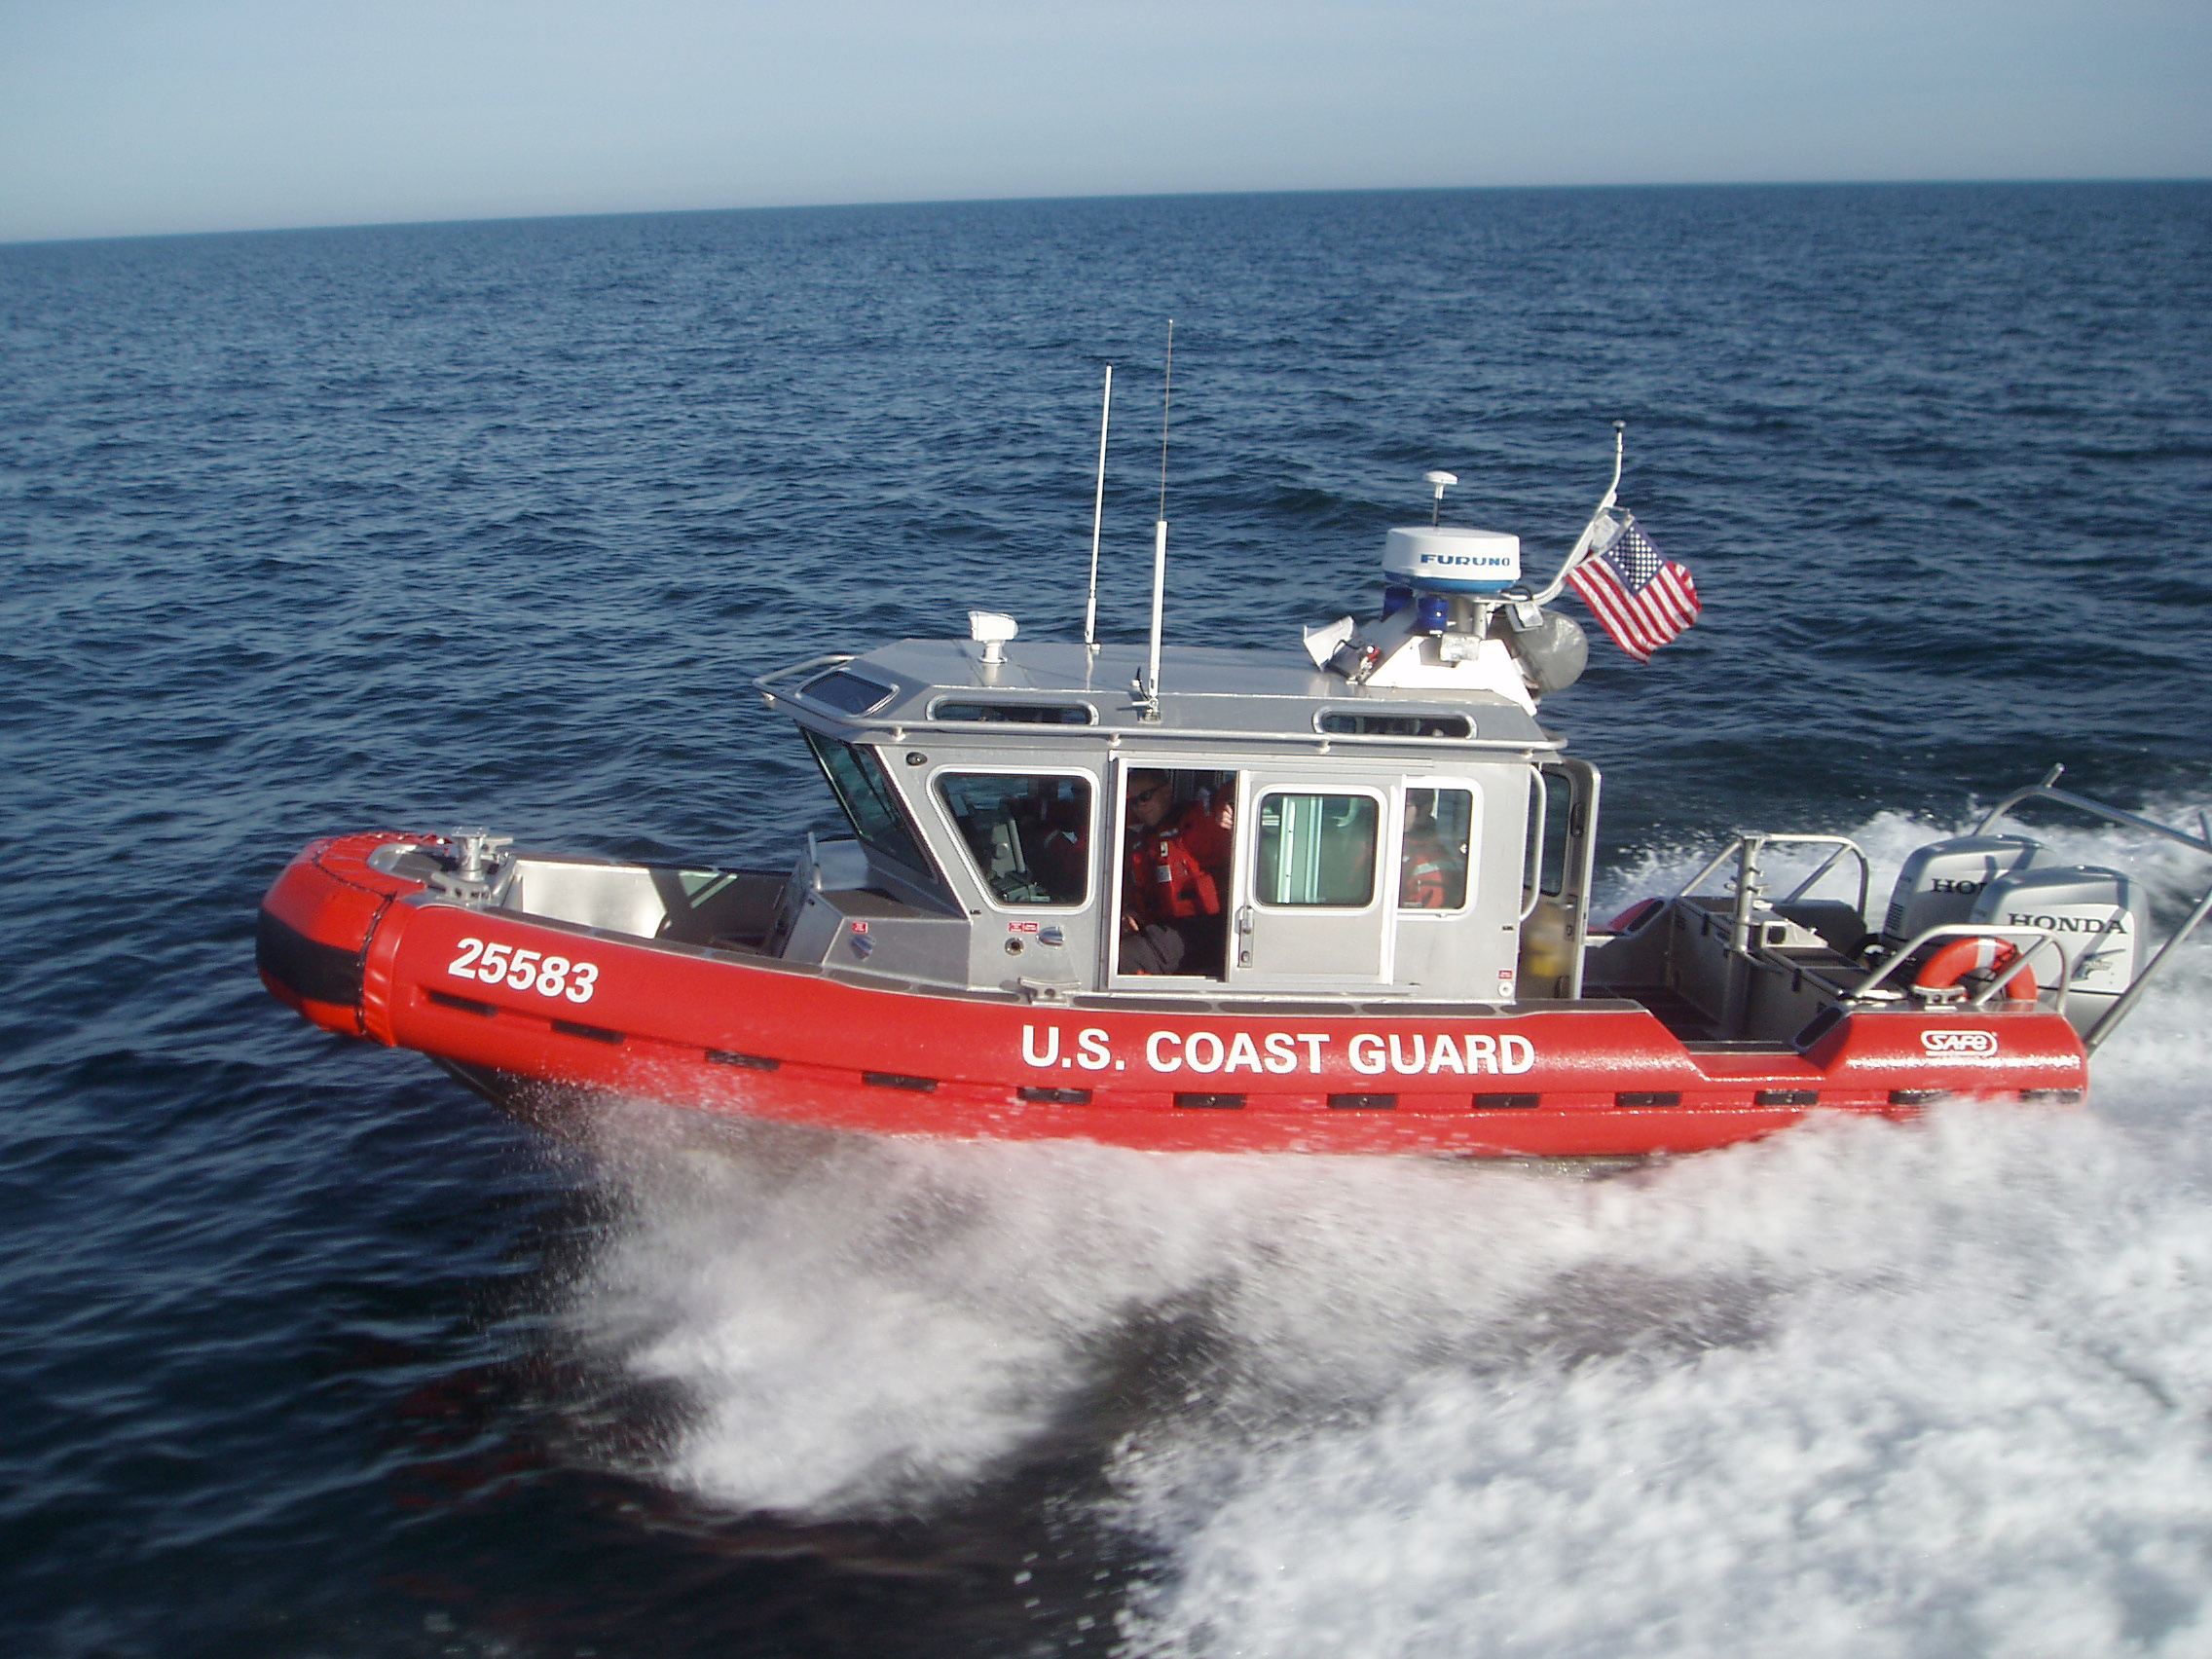 Brick PD to Acquire Former Coast Guard Boat | Brick, NJ Shorebeat ...